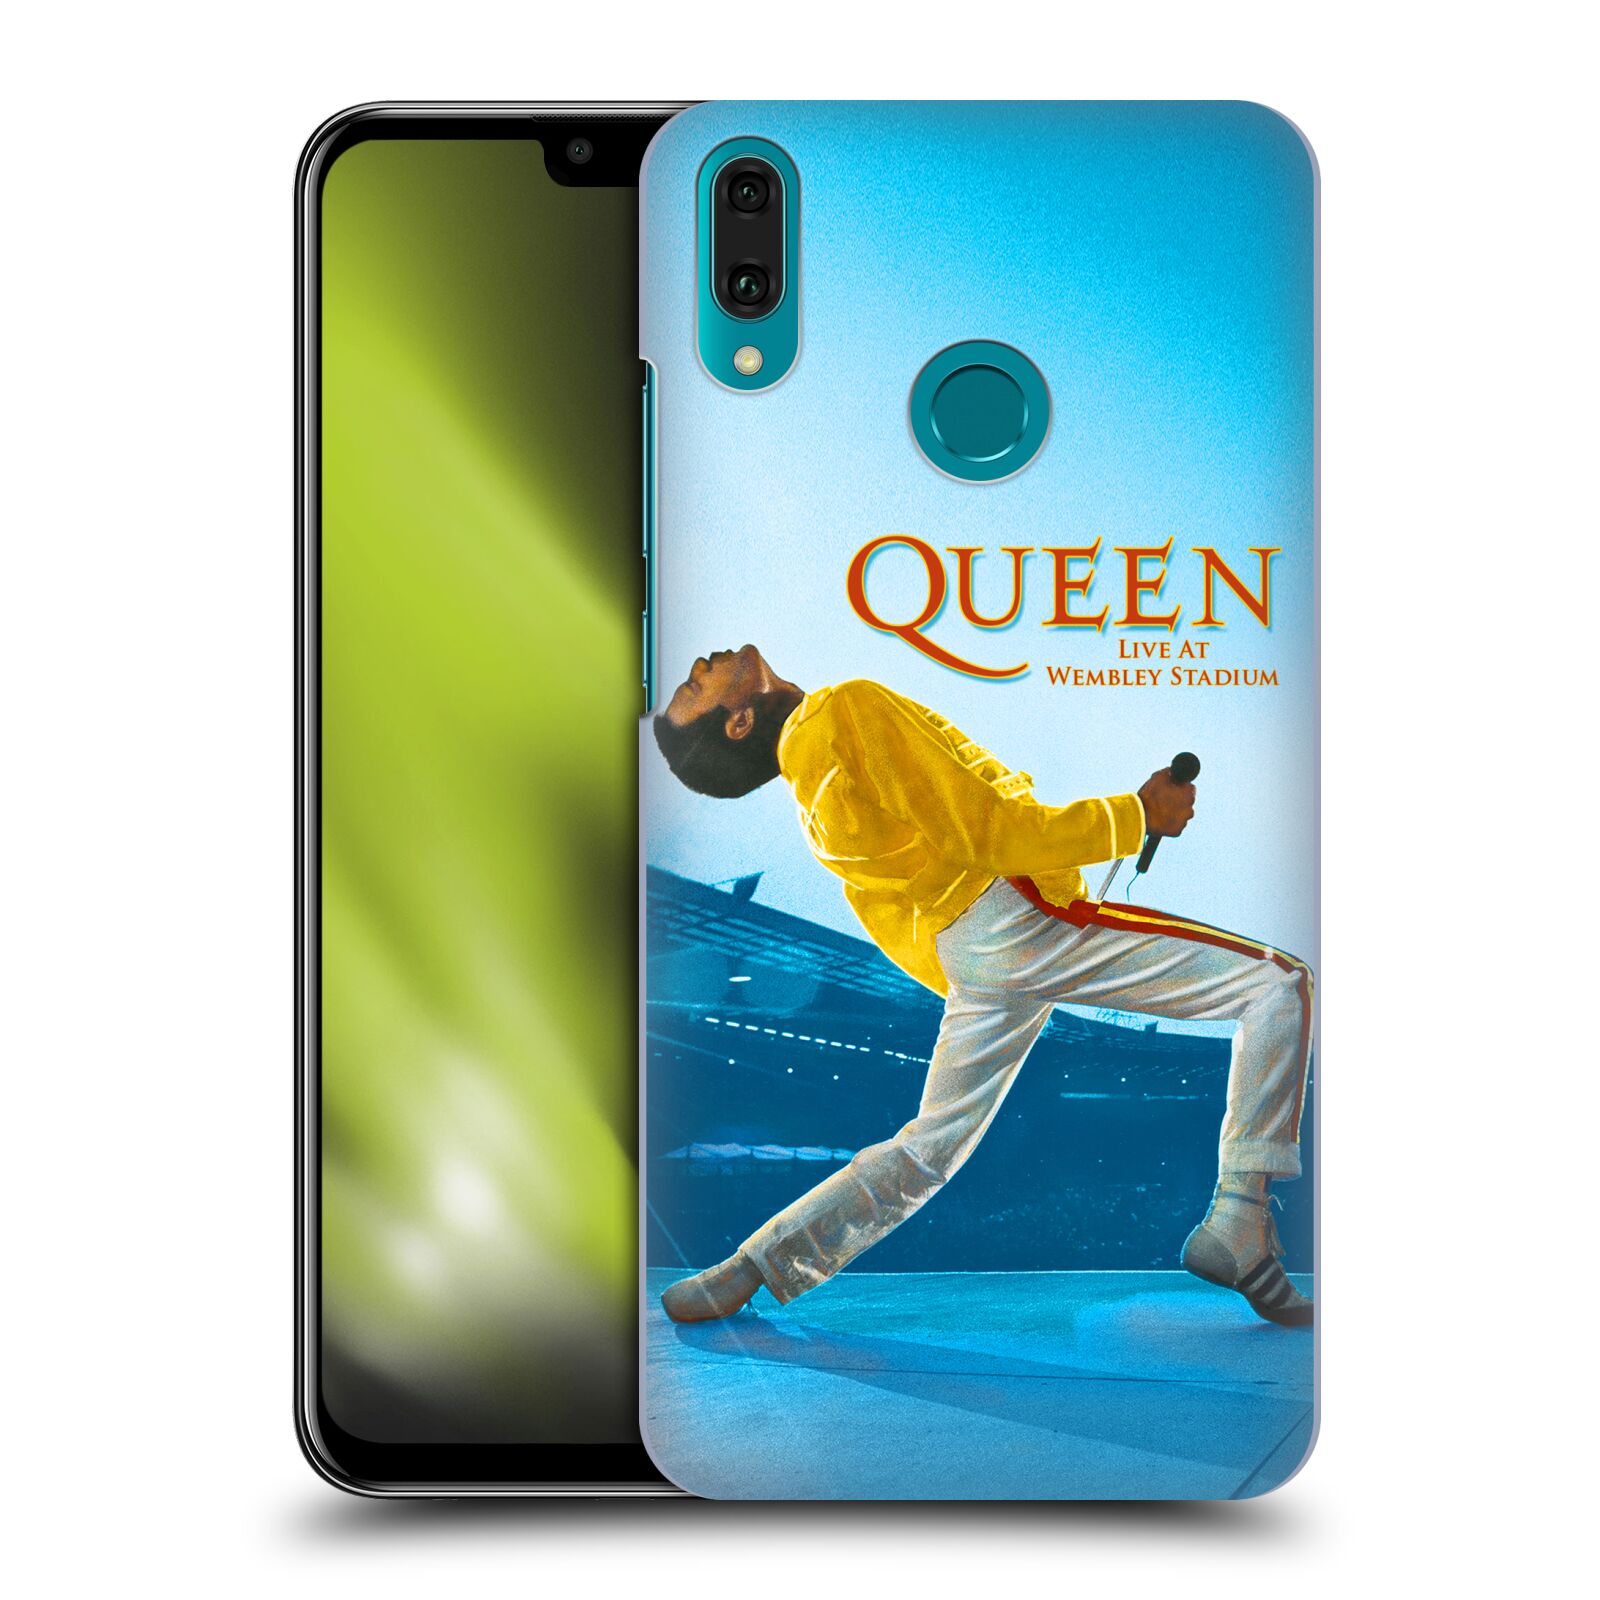 Pouzdro na mobil Huawei Y9 2019 - HEAD CASE - zpěvák Queen skupina Freddie Mercury